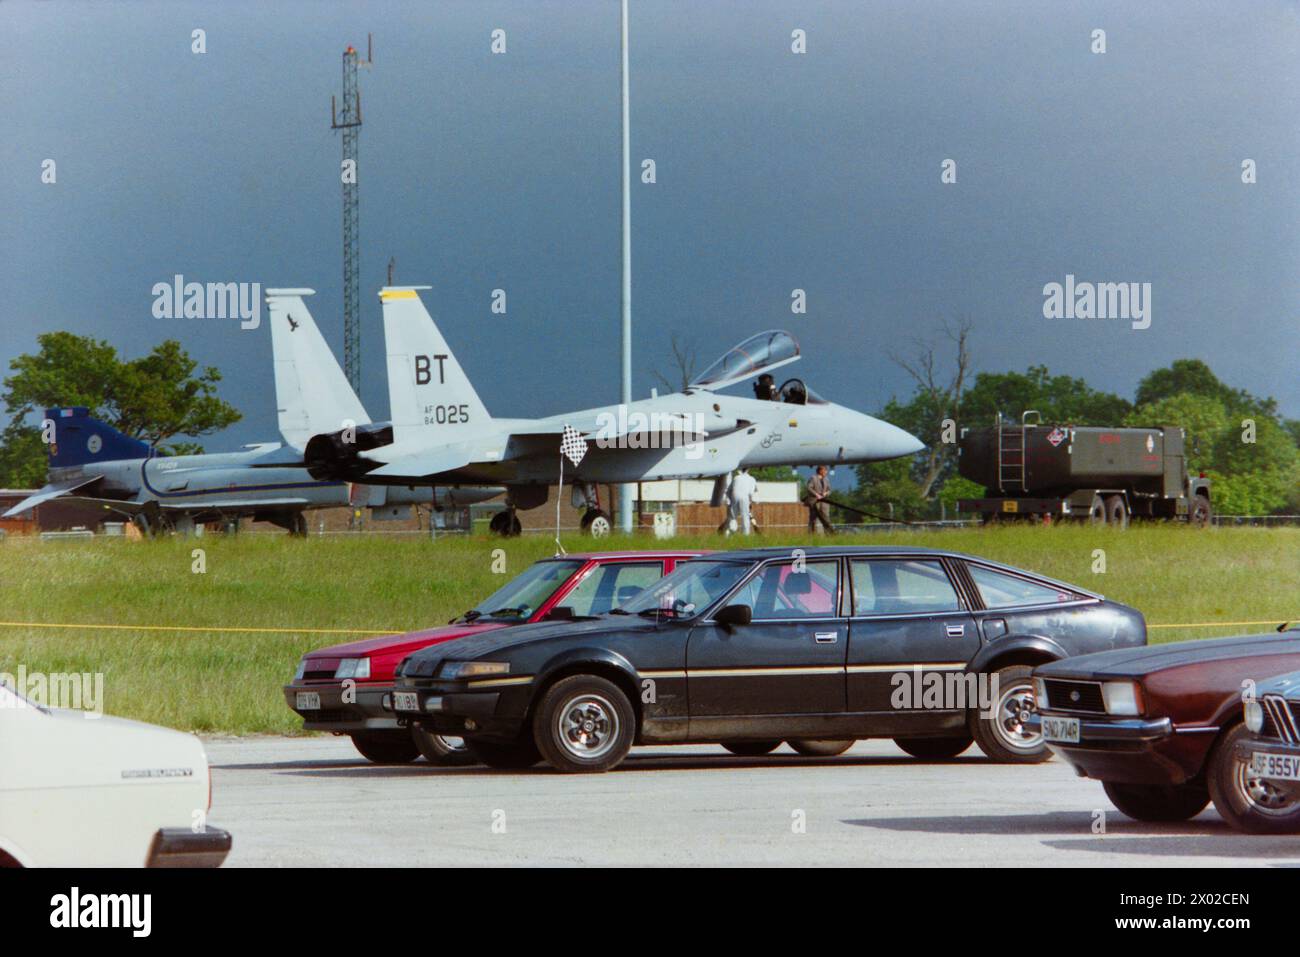 Aerei da caccia militari e auto per visitatori al RAF Wethersfield Airshow nel giugno 1988. Auto Rover SD1. Caccia F-15 Eagle dell'USAF in fase di rifornimento Foto Stock